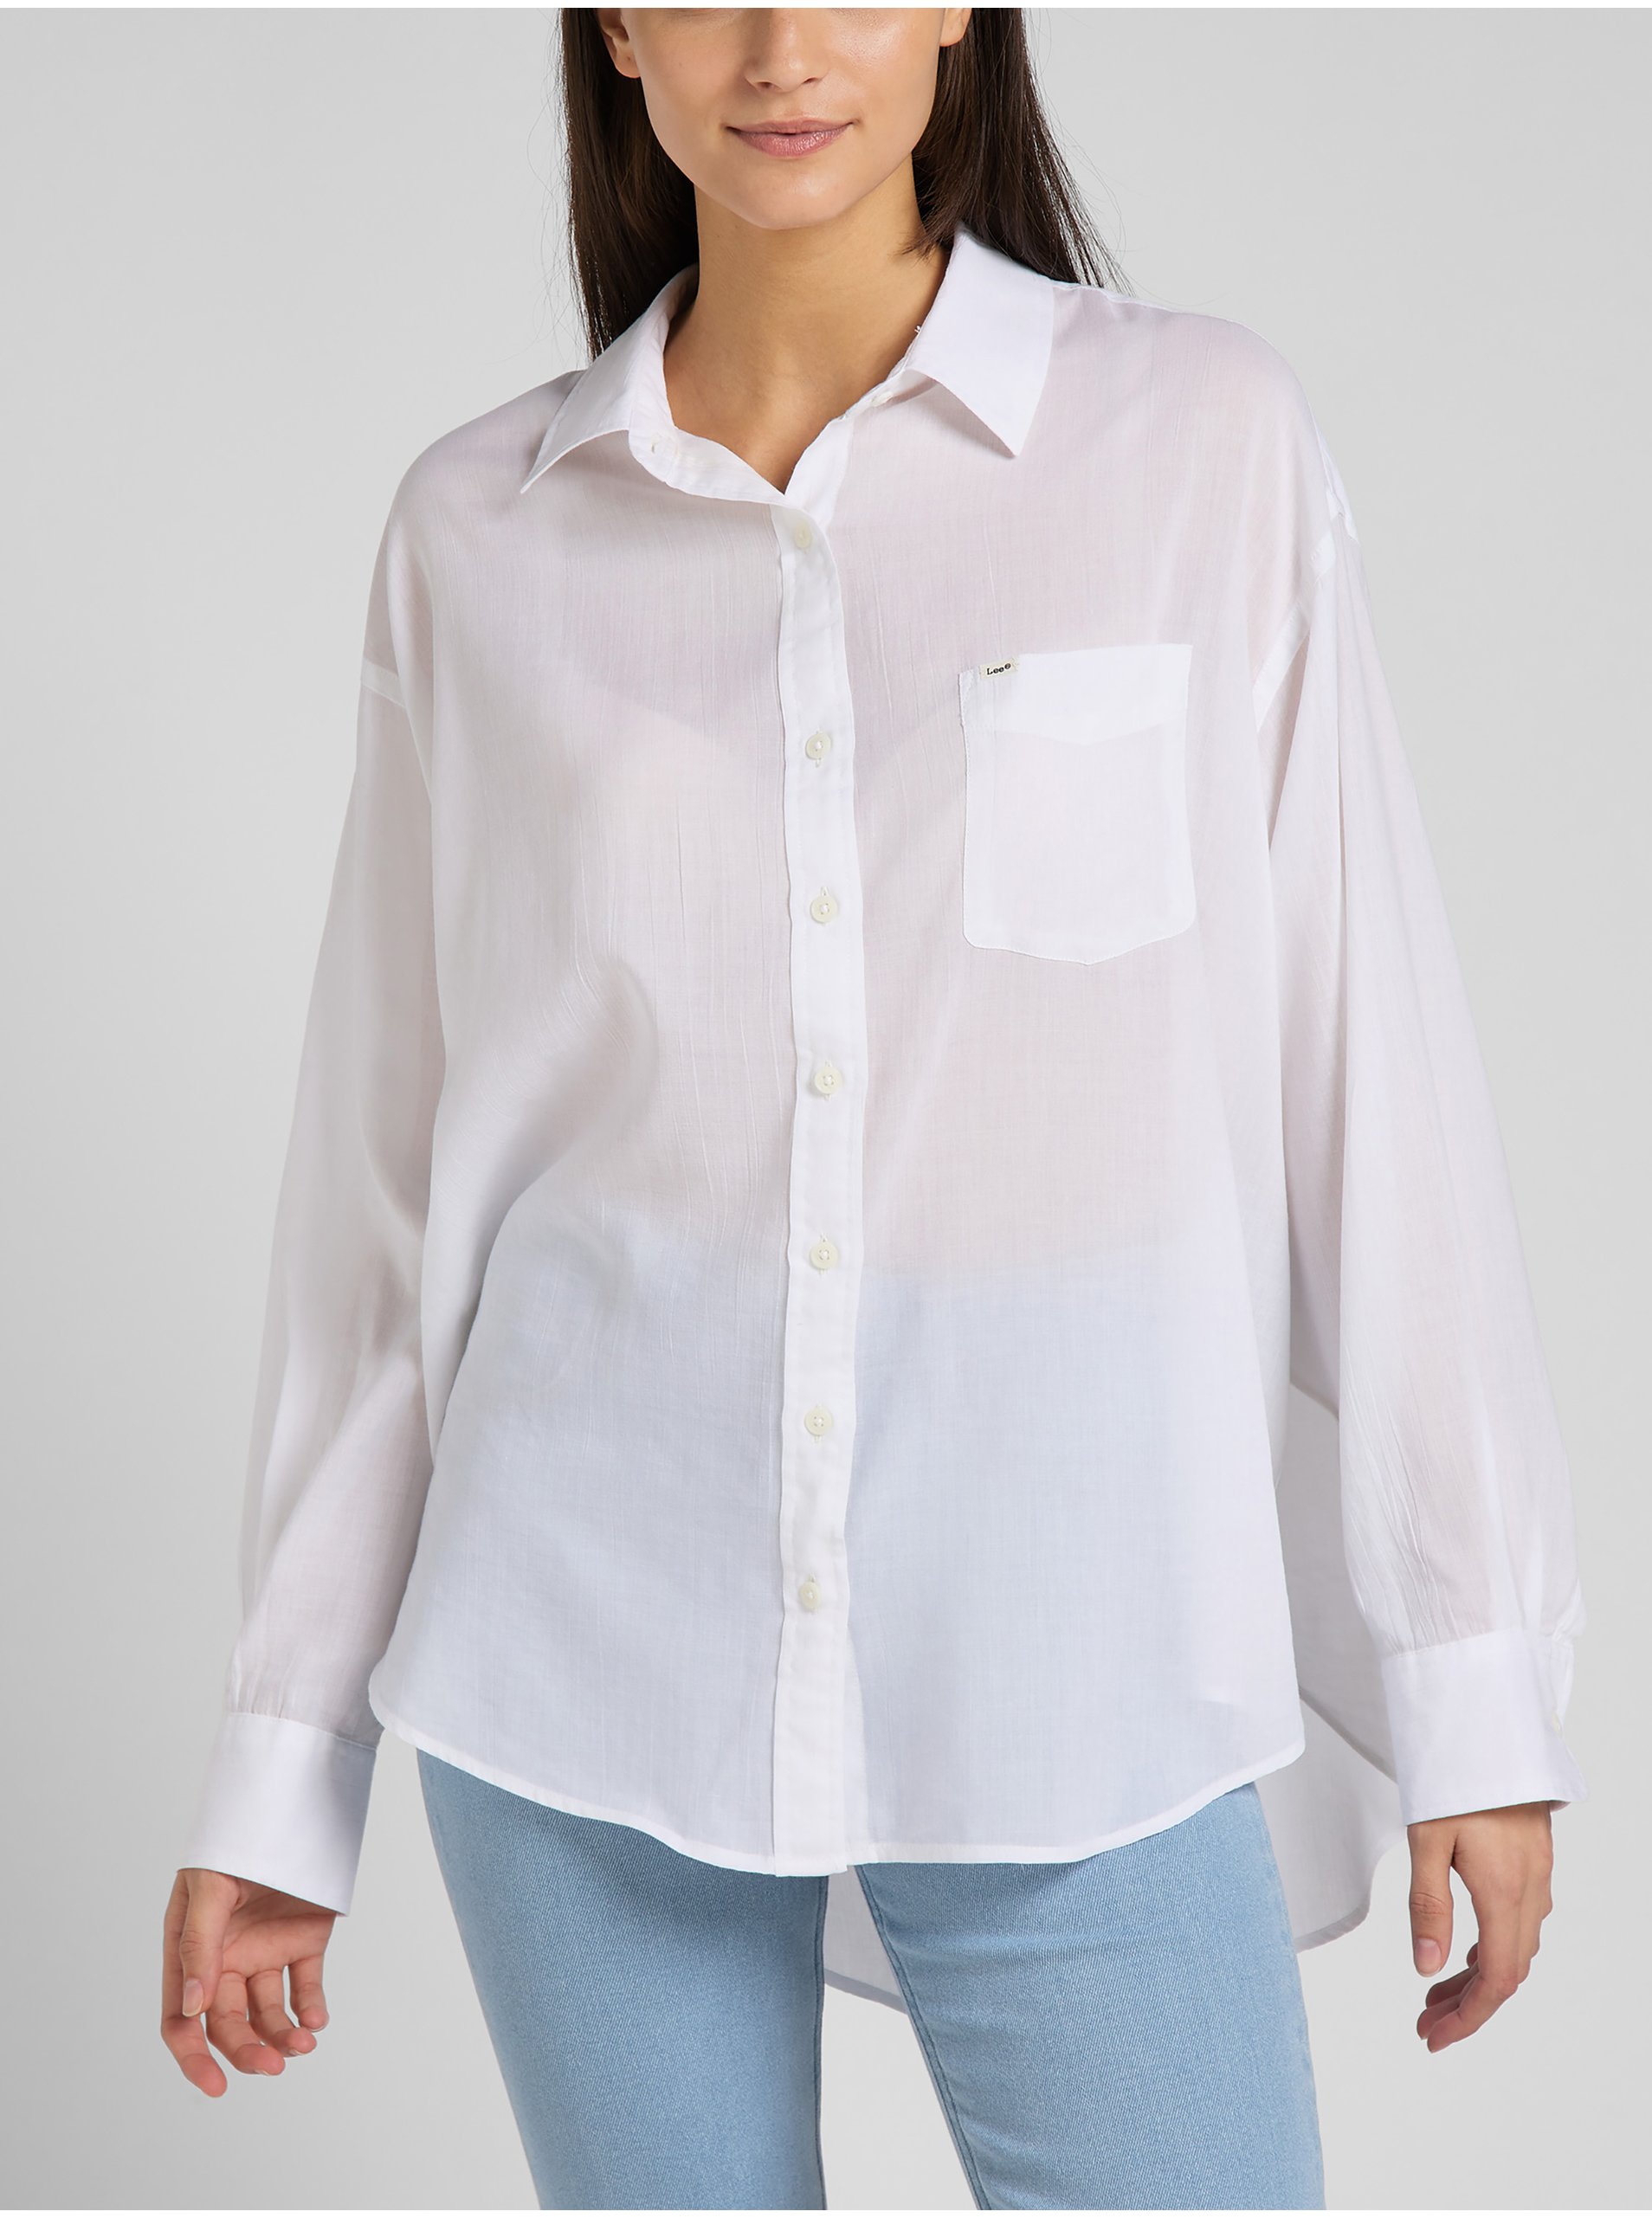 Lacno Biela dámska voľná košeľa s predĺženou zadnou časťou Lee